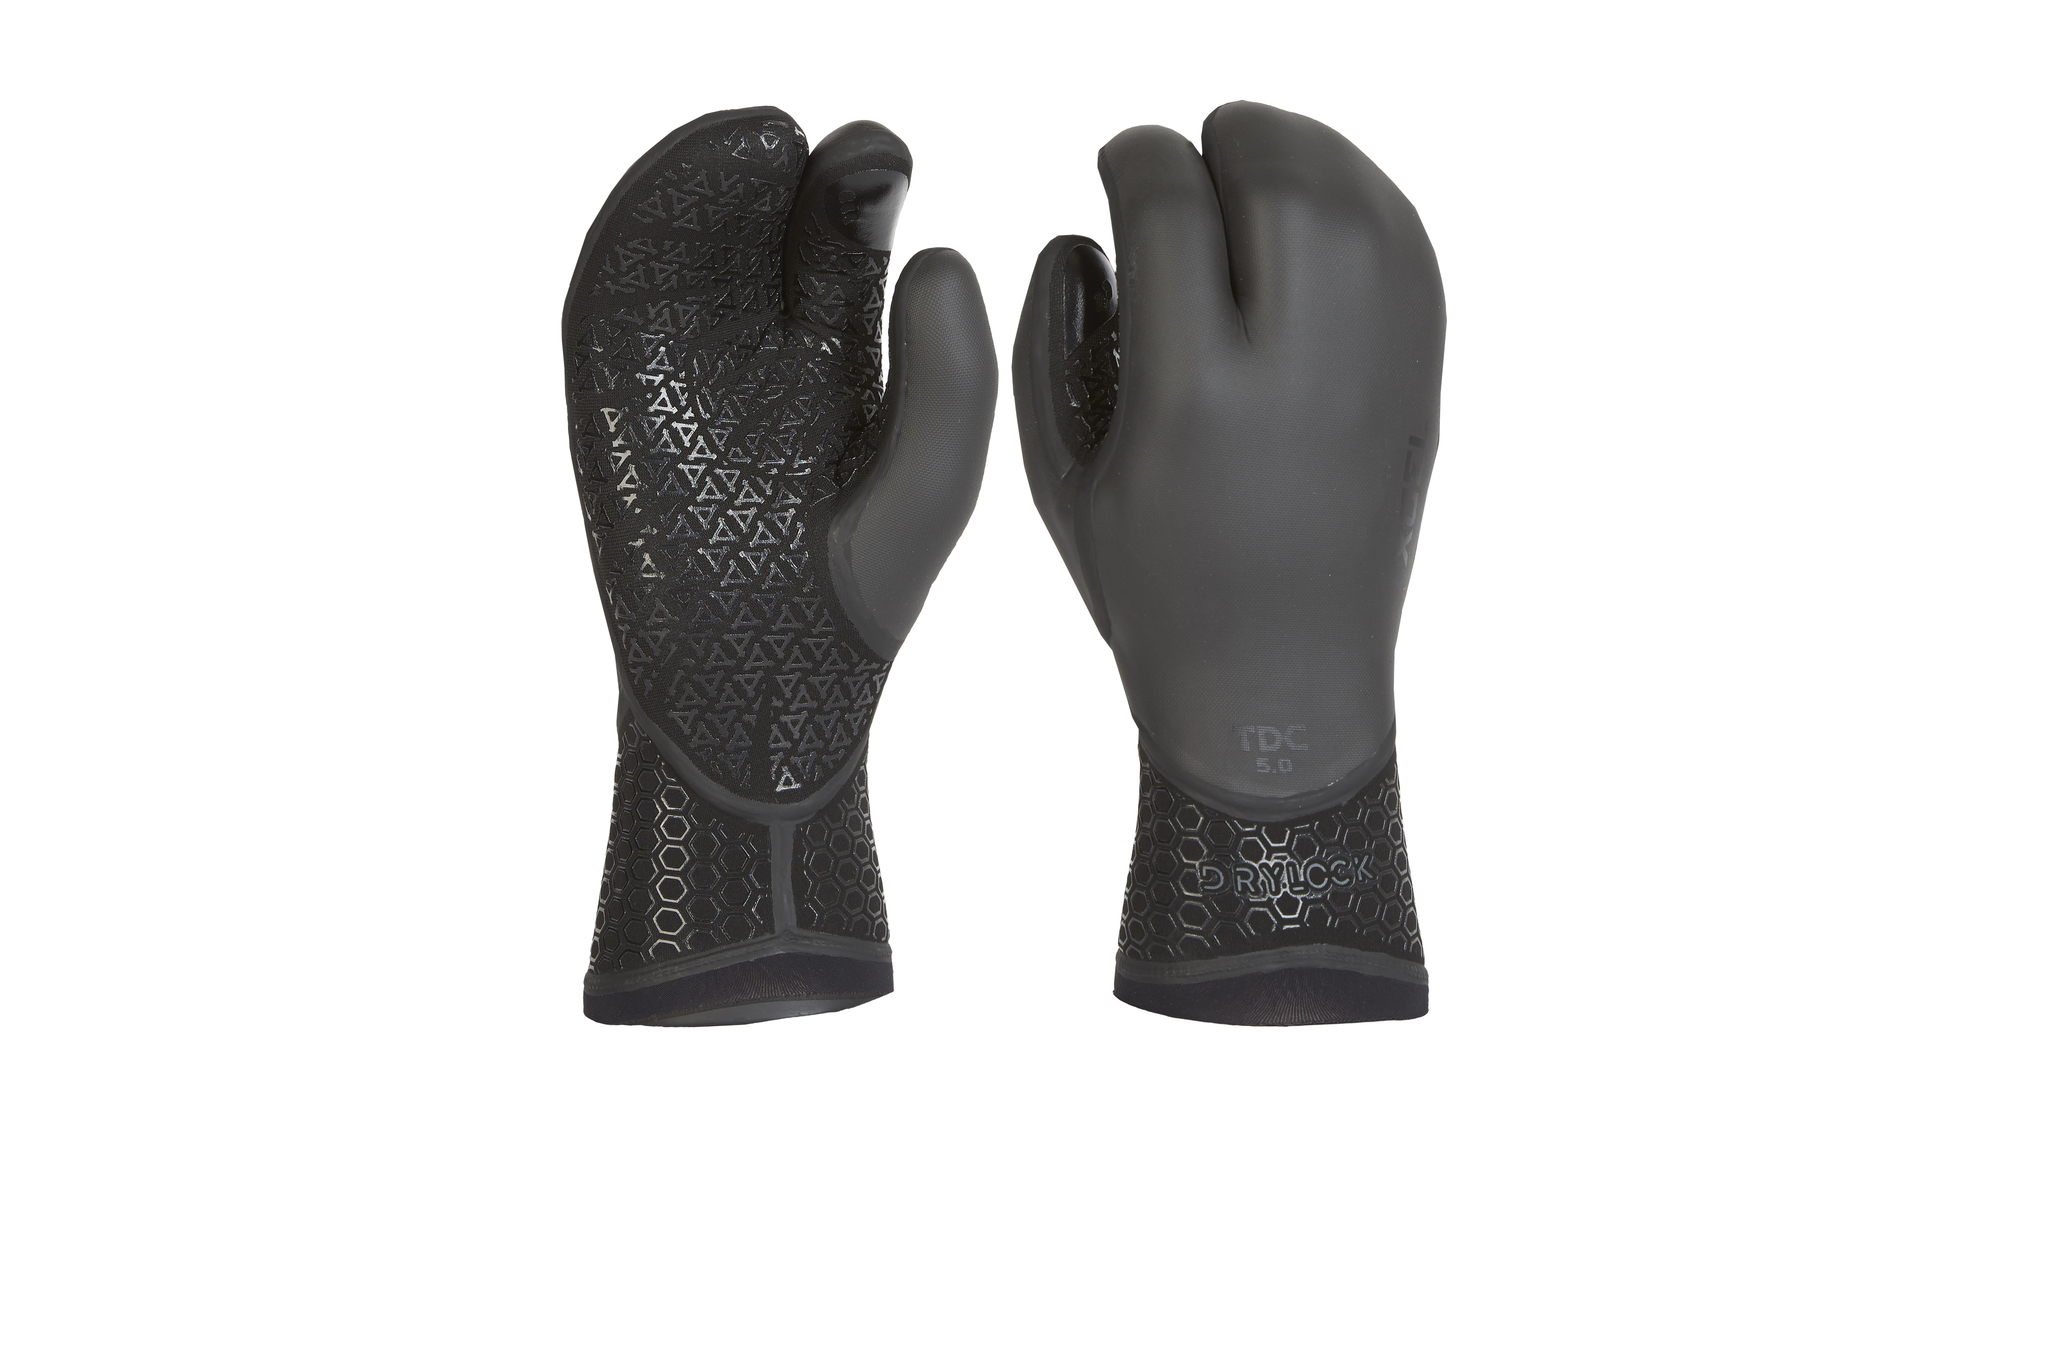 Xcel Drylock 5mm Texture Skin 3 Finger Glove Fall 2017 Small Black